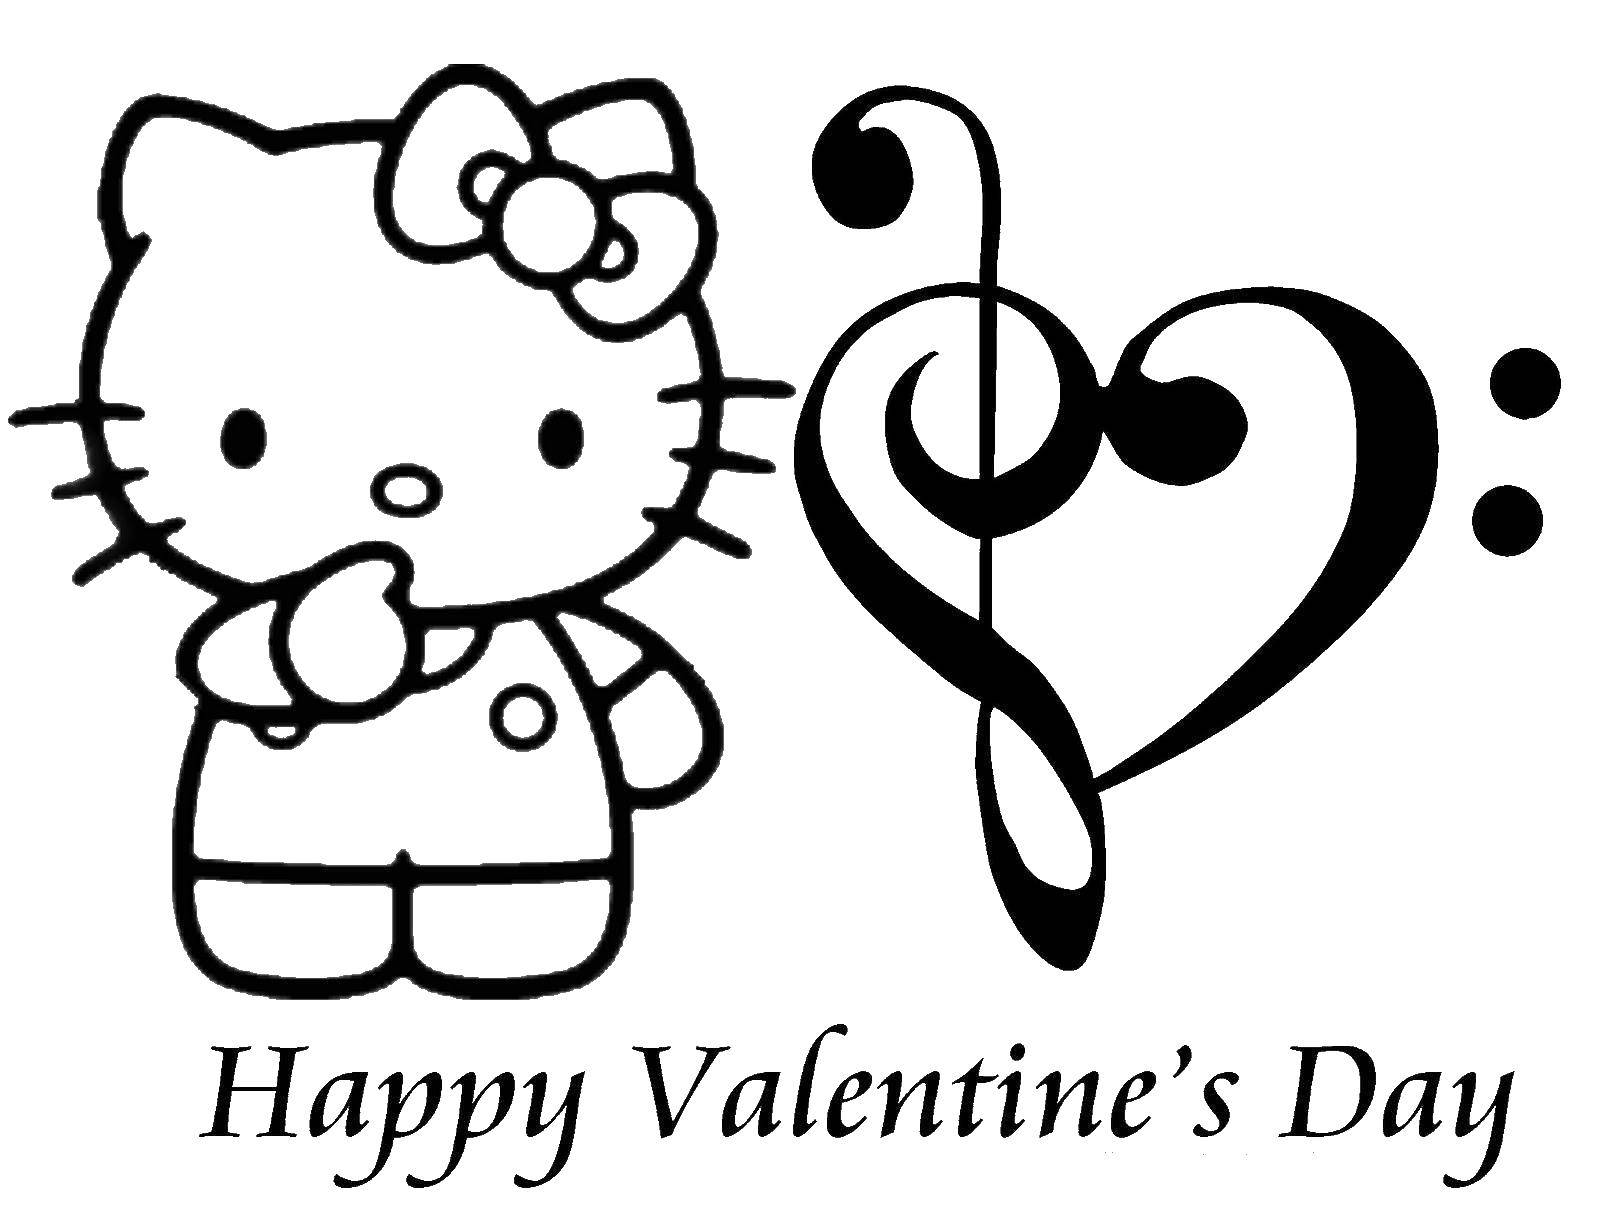 Название: Раскраска Китти поздравляет с днем святого валентина. Категория: День святого валентина. Теги: День святого валентина, поздравление.